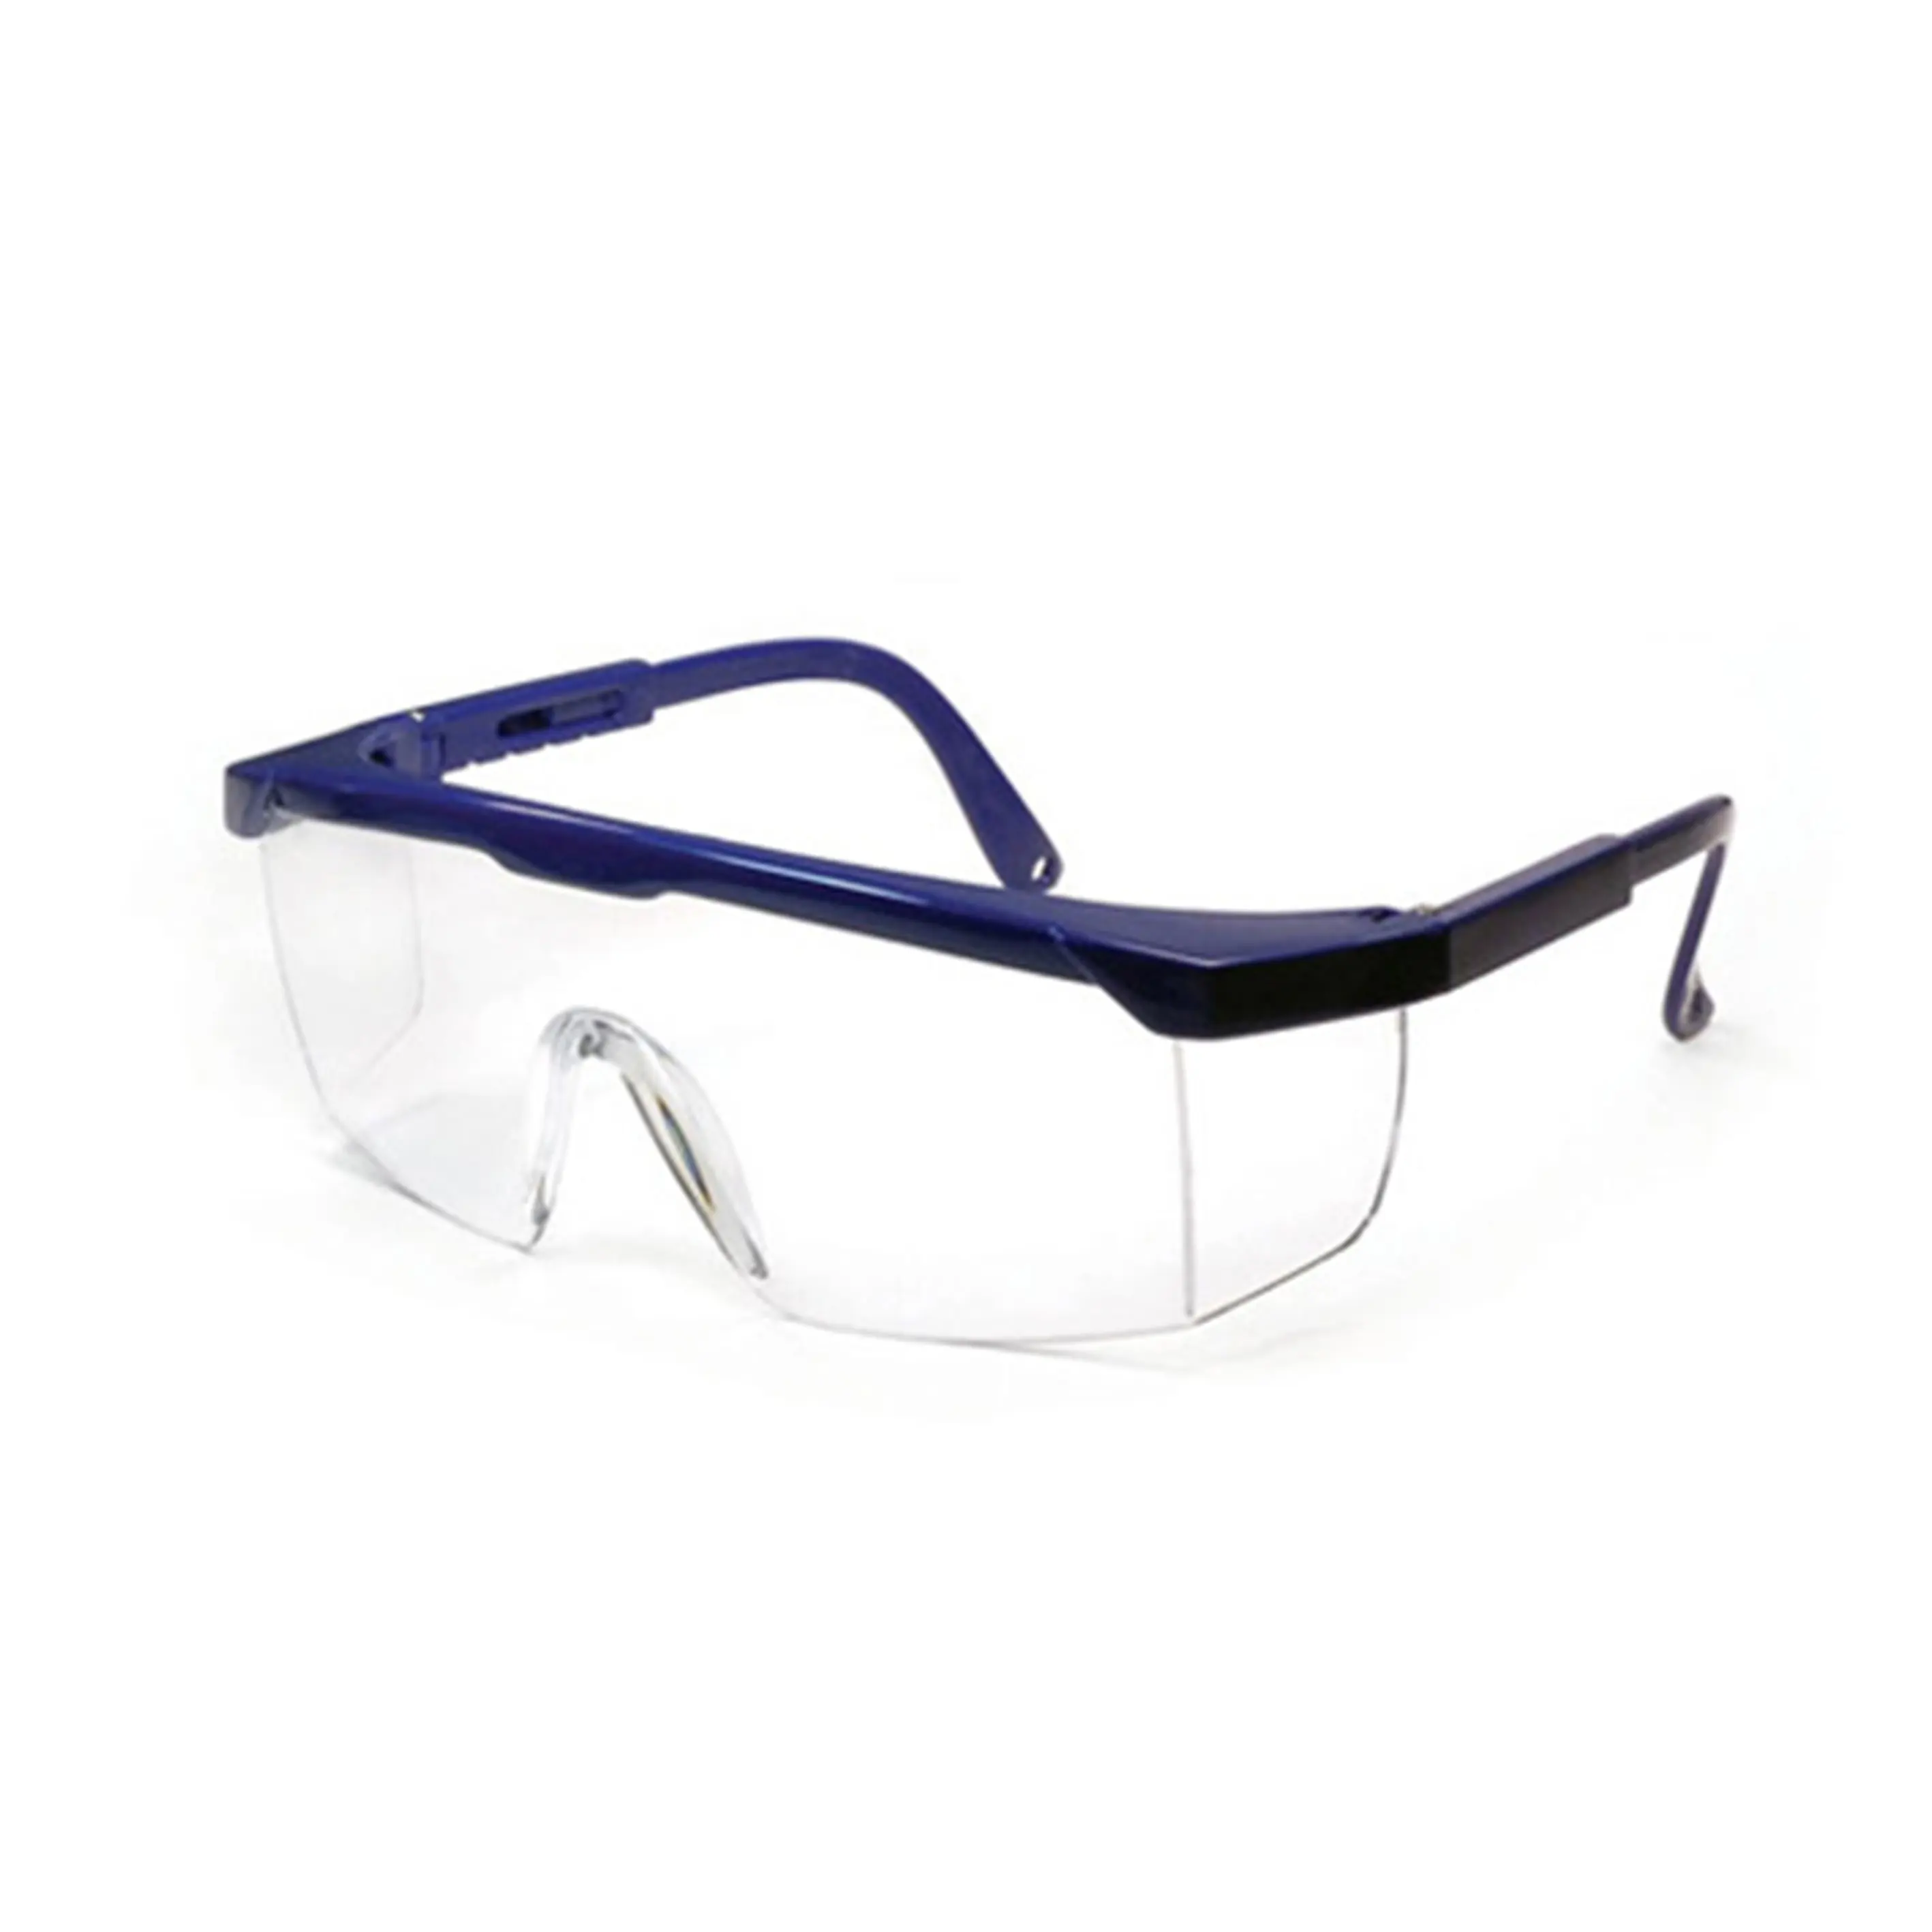 SG1001 güvenlik gözlükleri Anti darbe iş gözlükleri koruyucu yan kalkan gözlük güvenlik kaynak gözlük CE